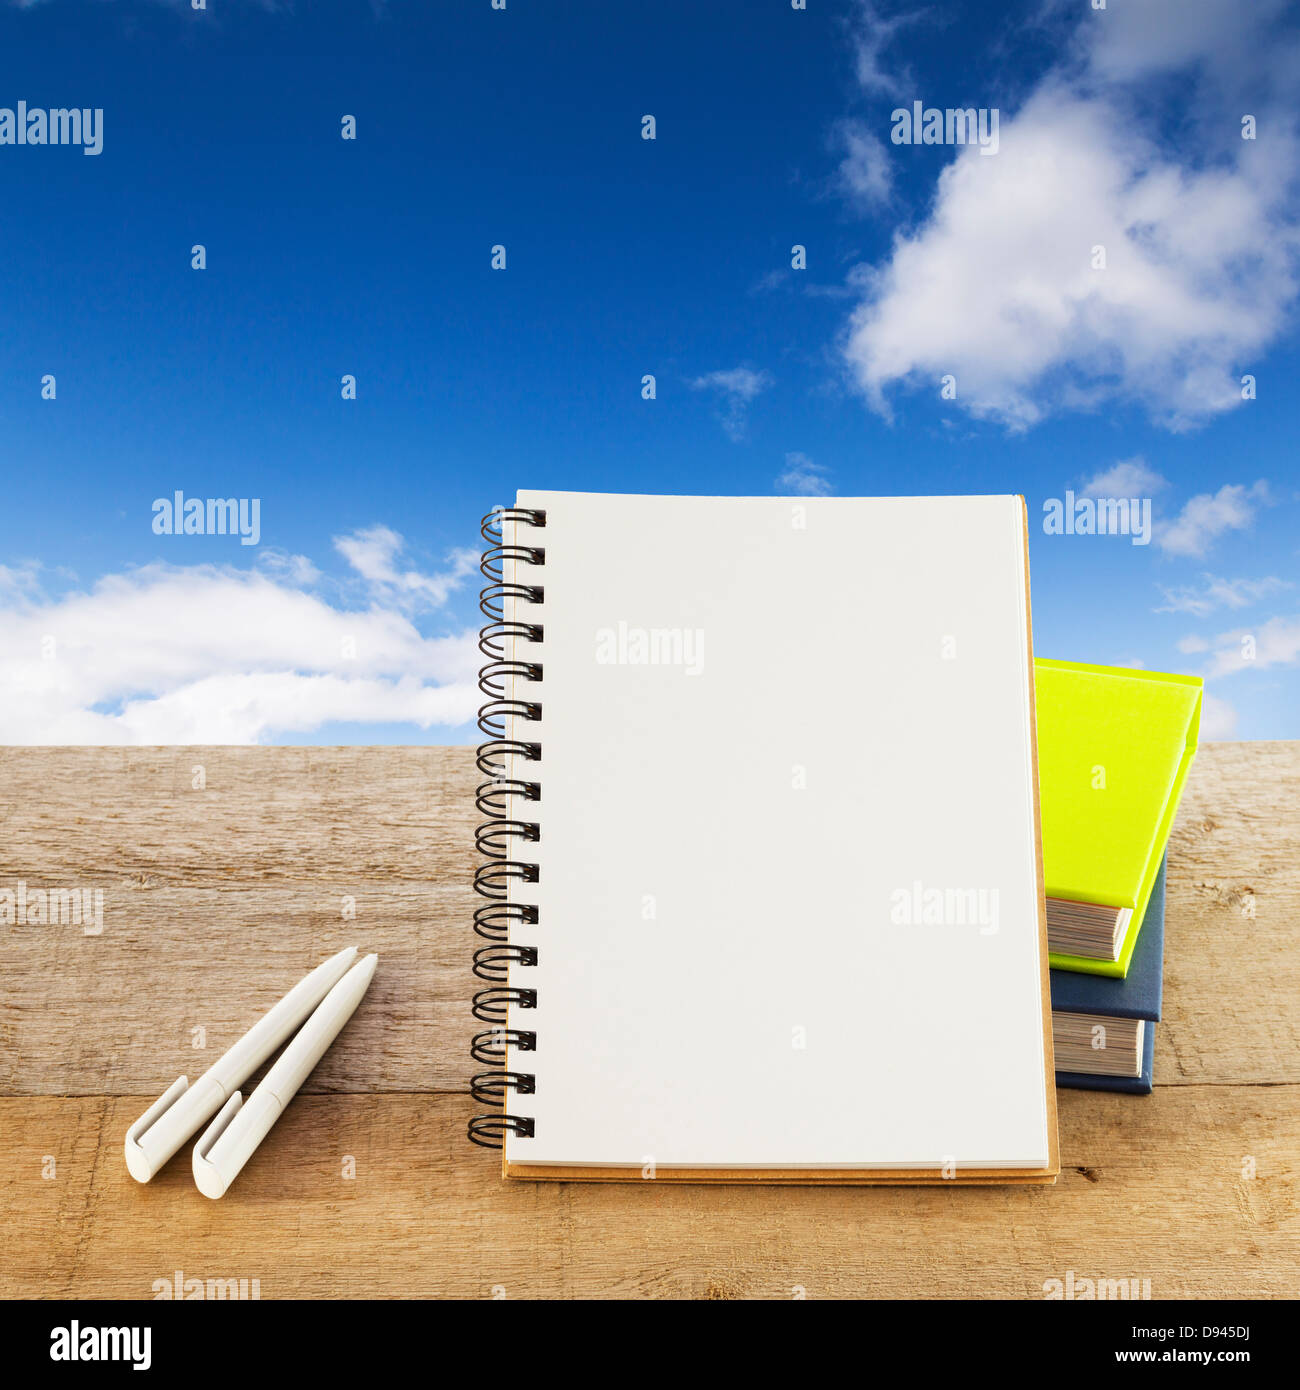 Frische Ideen Konzept - ein Notizbuch auf eine rustikale Oberfläche, lehnte sich gegen ein paar Bücher, Stifte, bereit für die Herstellung... Stockfoto